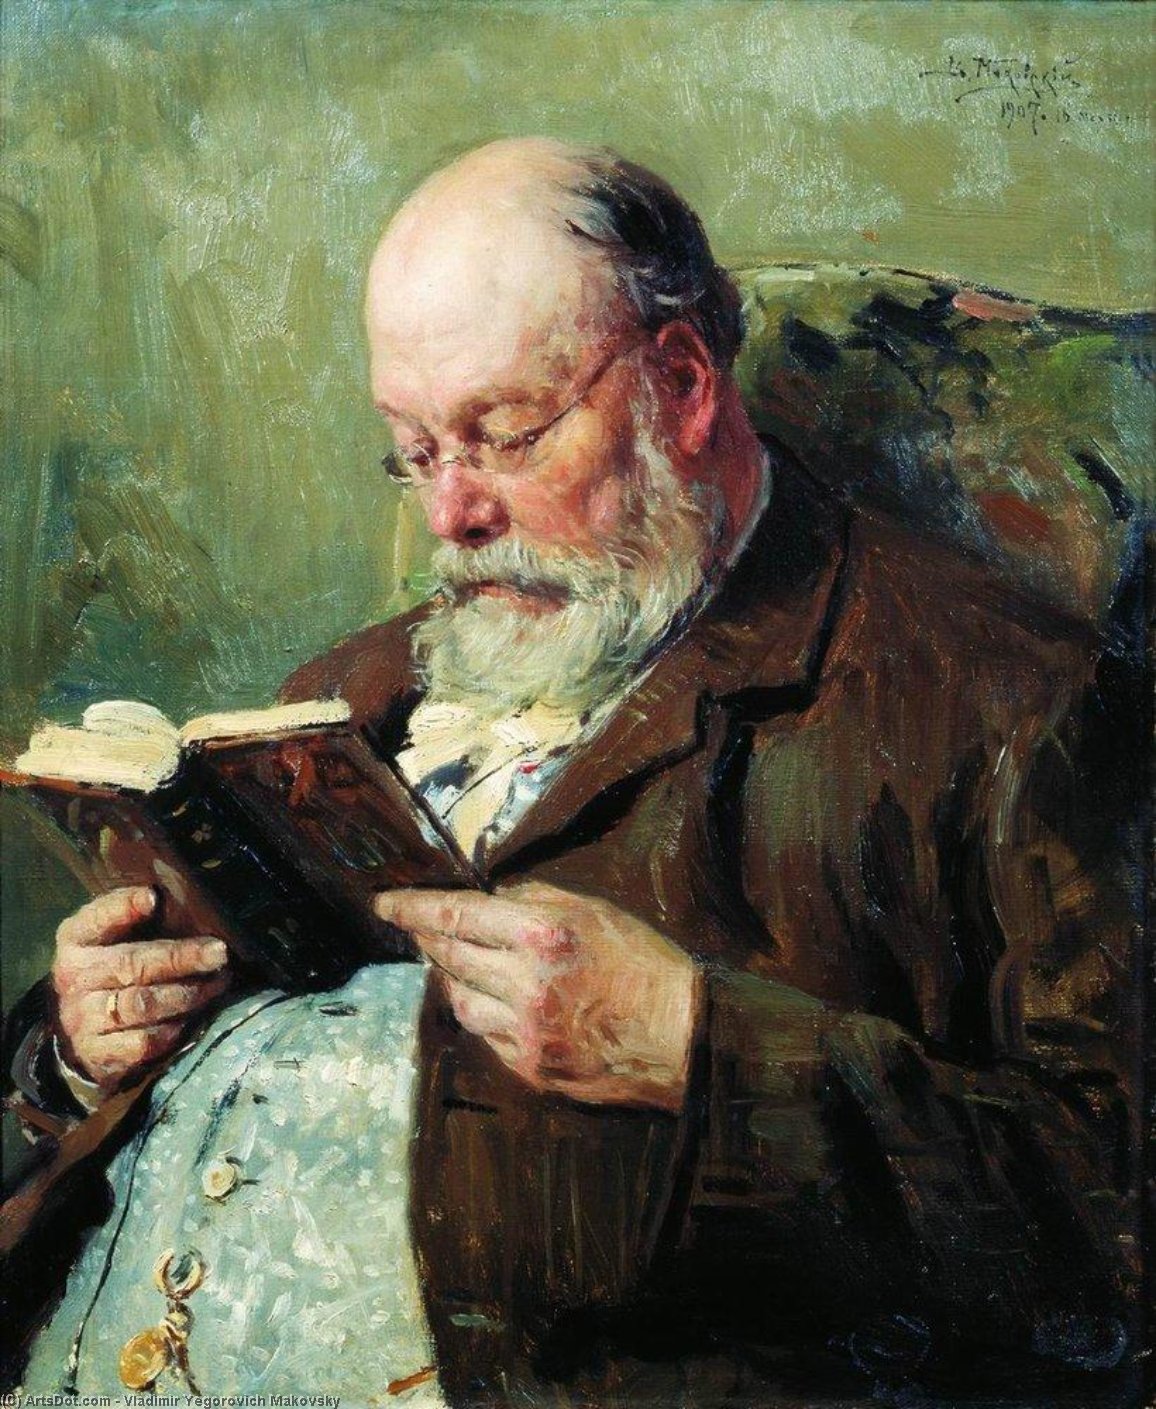 WikiOO.org - Encyclopedia of Fine Arts - Lukisan, Artwork Vladimir Yegorovich Makovsky - Portrait of academician Ivan Yanzhul